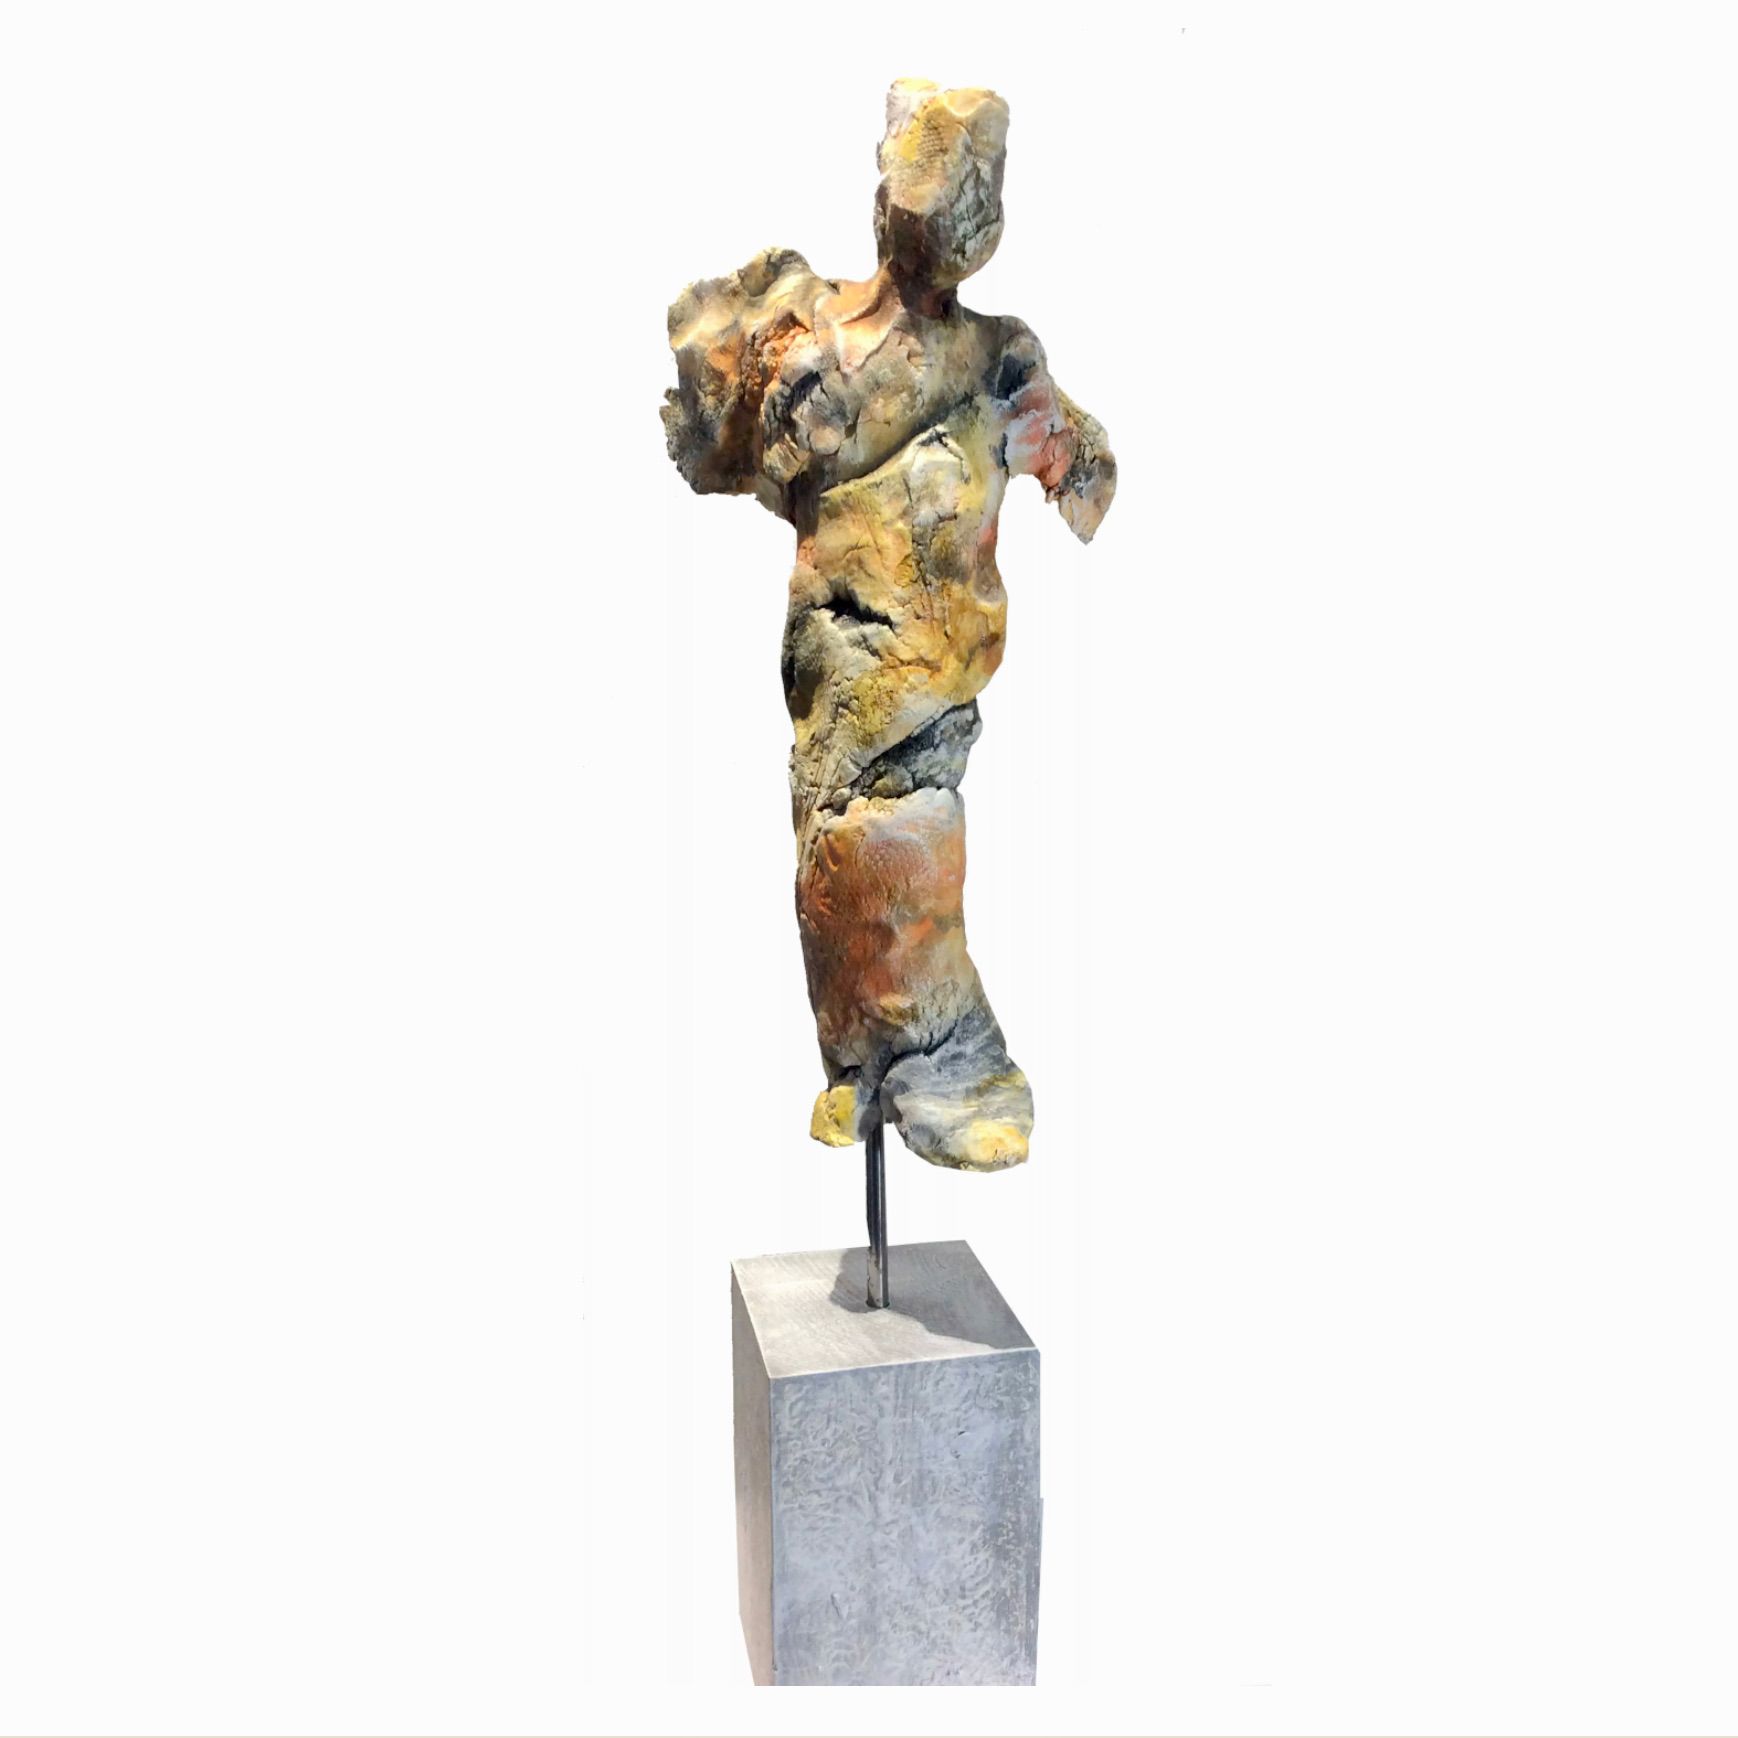 La "FIGURINE NR. XII" de Ilona Schmidt muestra una escultura de un cuerpo modelado de arcilla, cocida, con peana de madera y pátina de color frío.